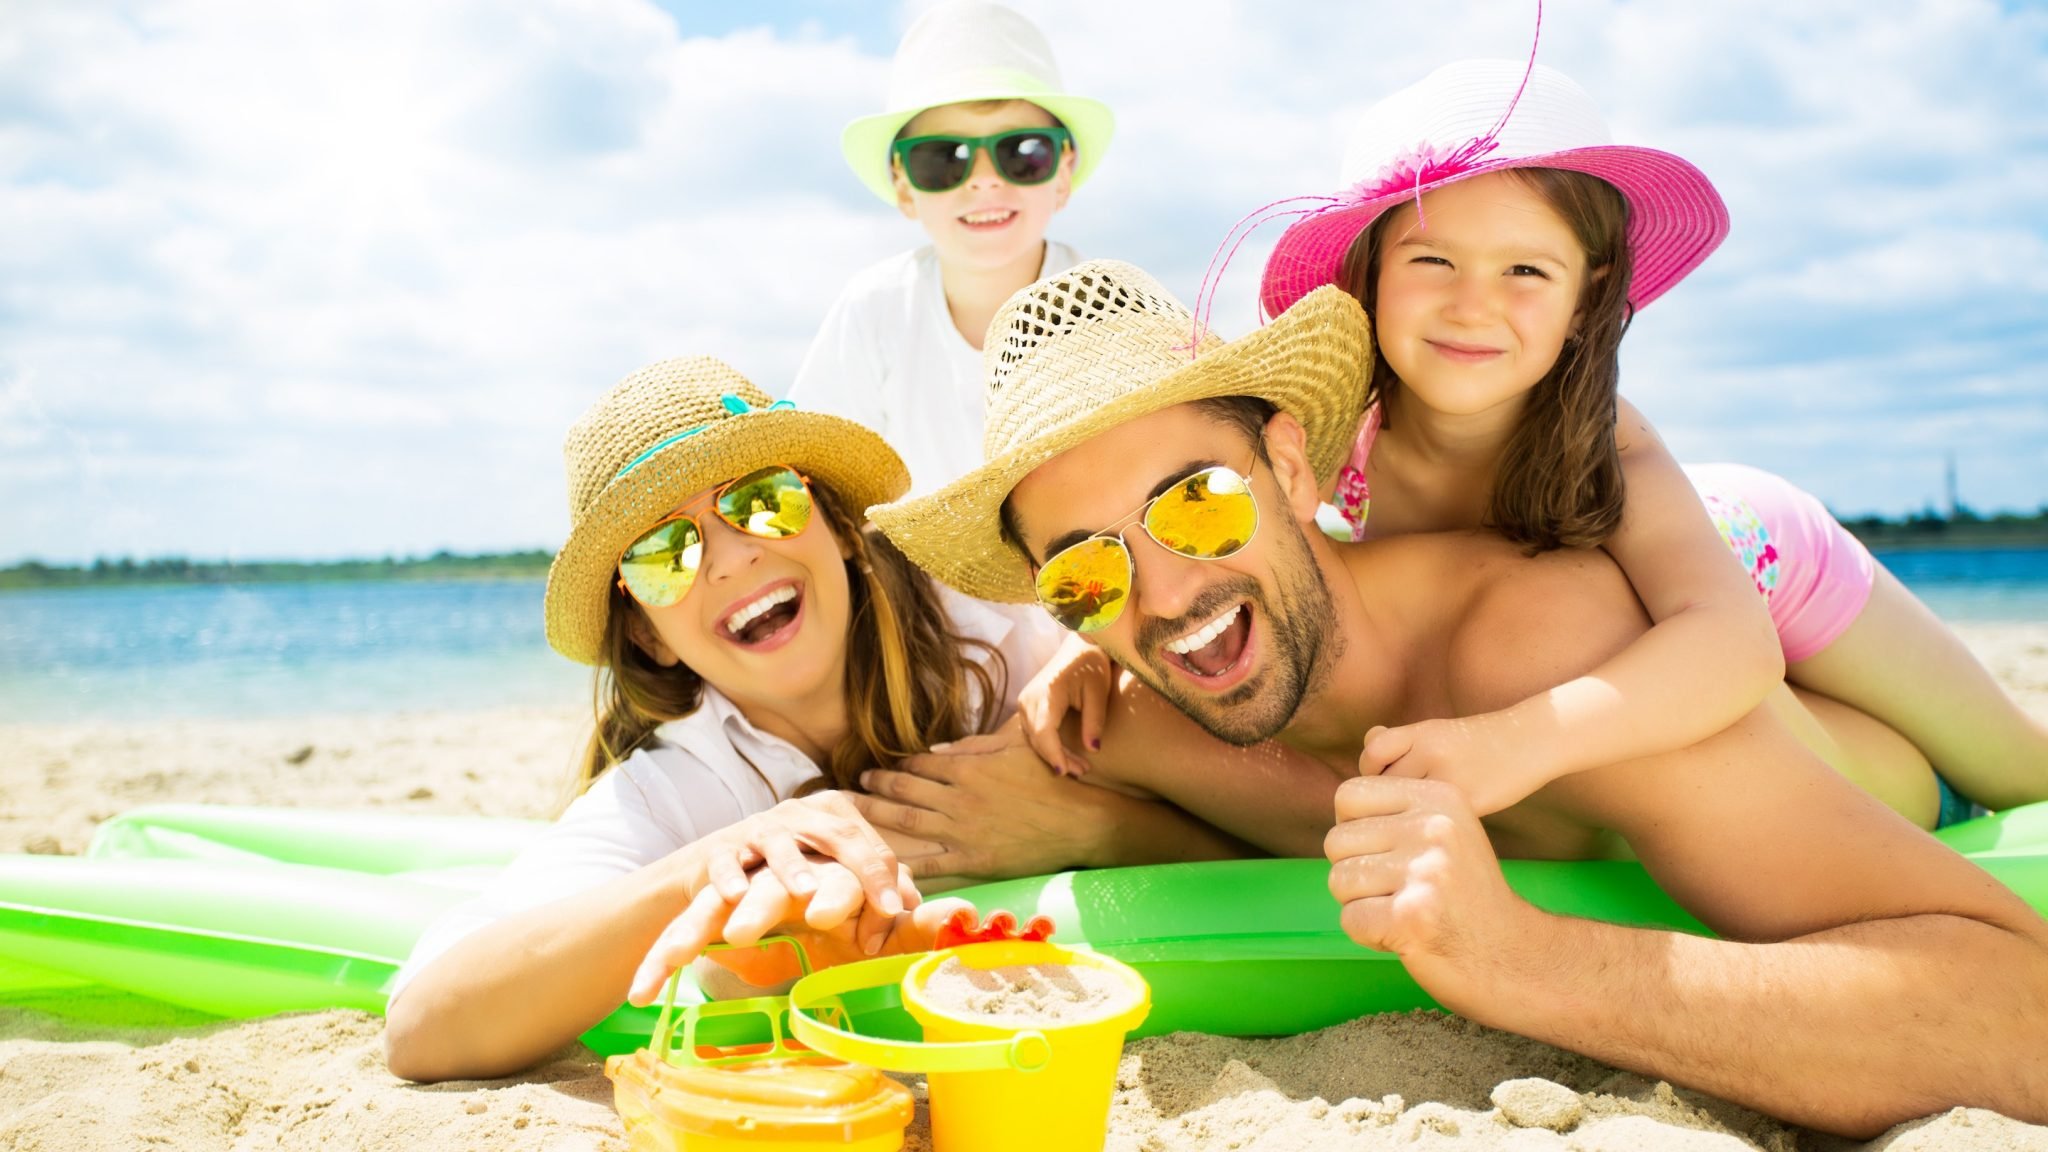 Развлечения в путешествии. Лето пляж. Веселые люди на пляже. Семья на пляже. Лето отпуск море семья.